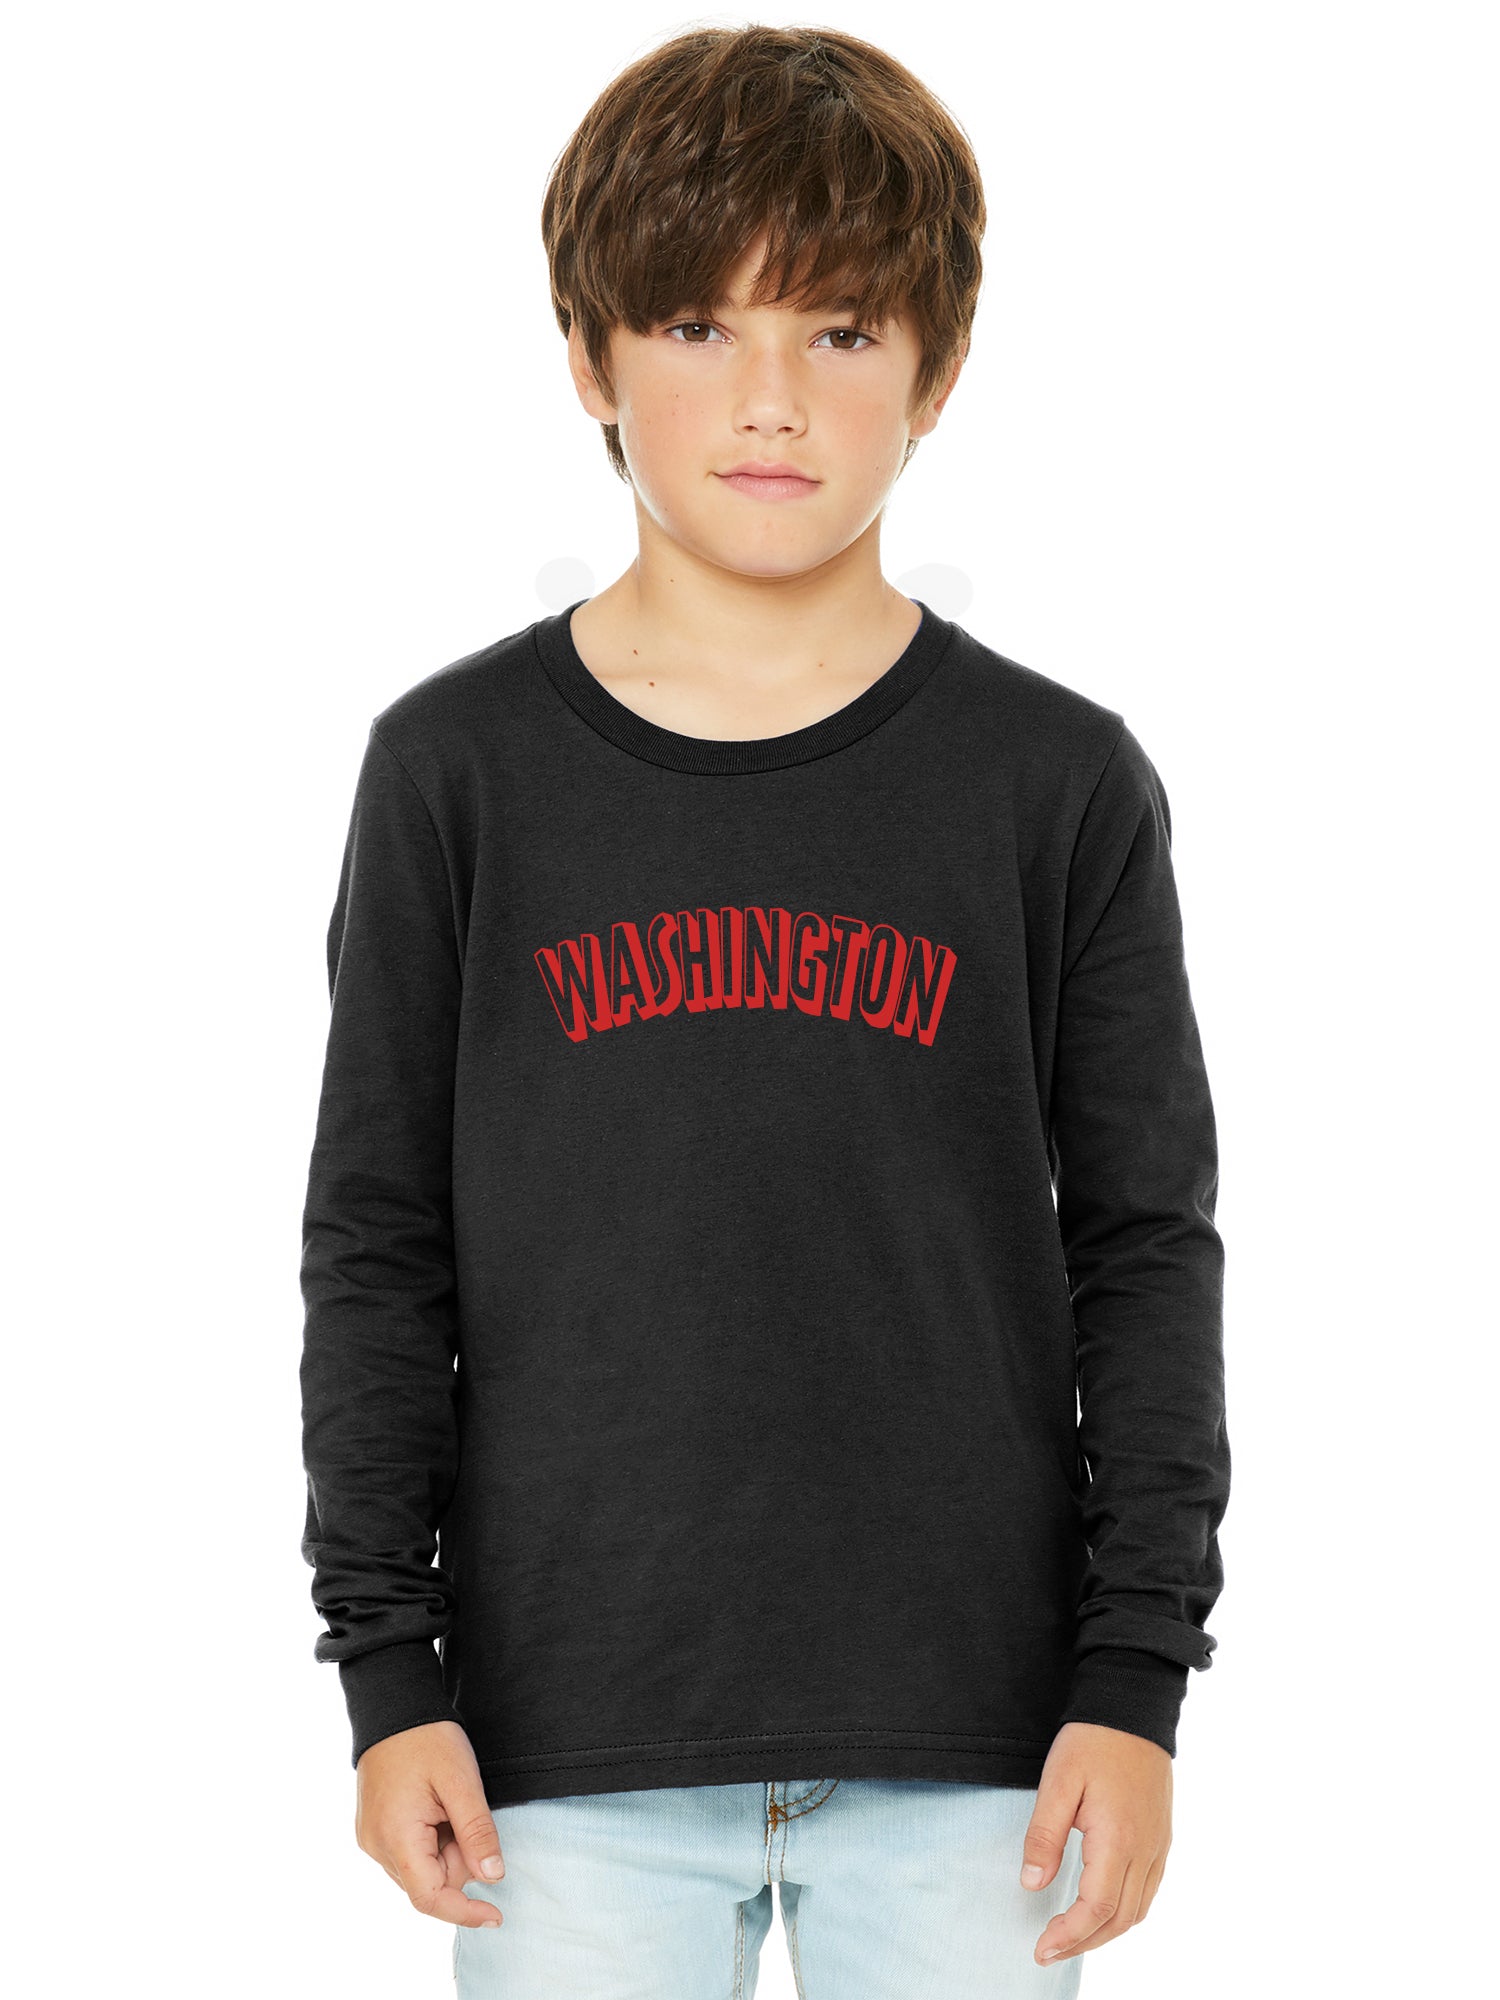 Washington Clothing